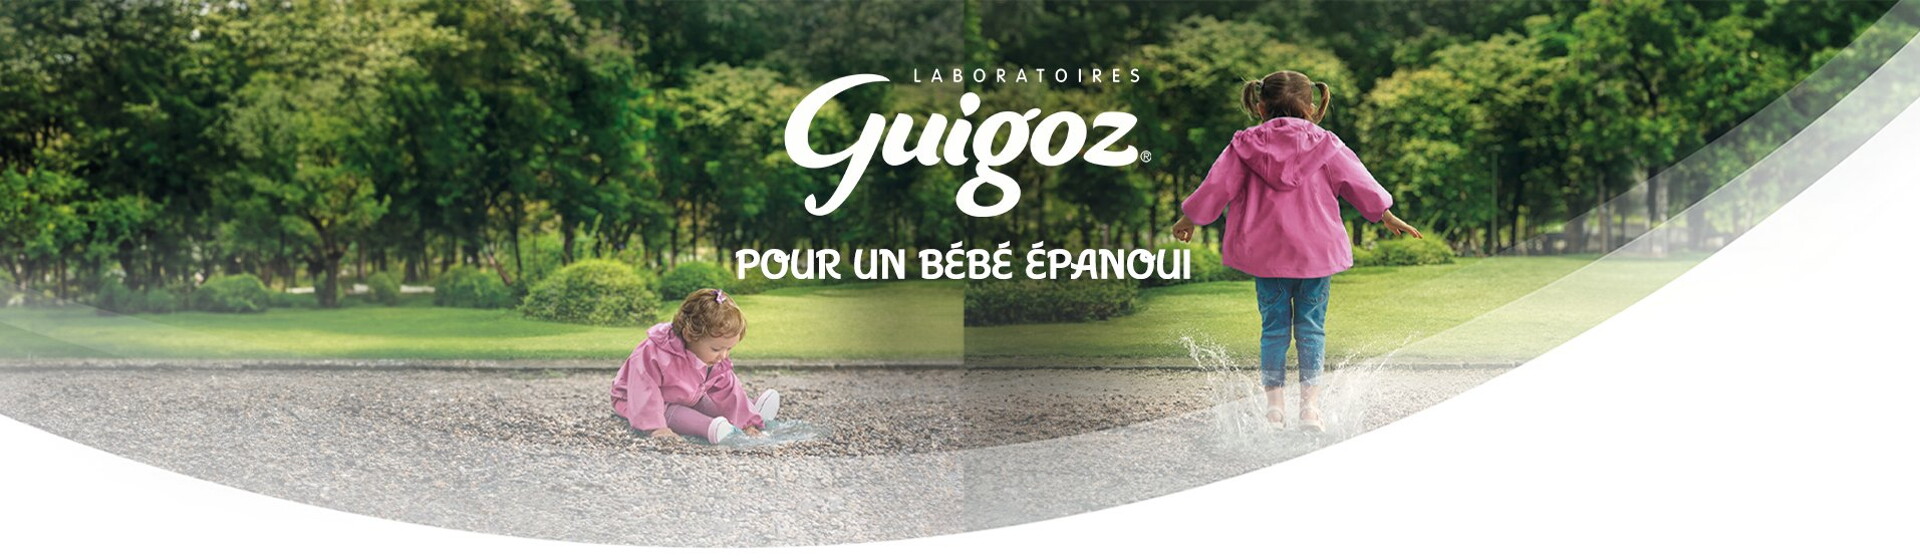 Guigoz® Optipro® 2